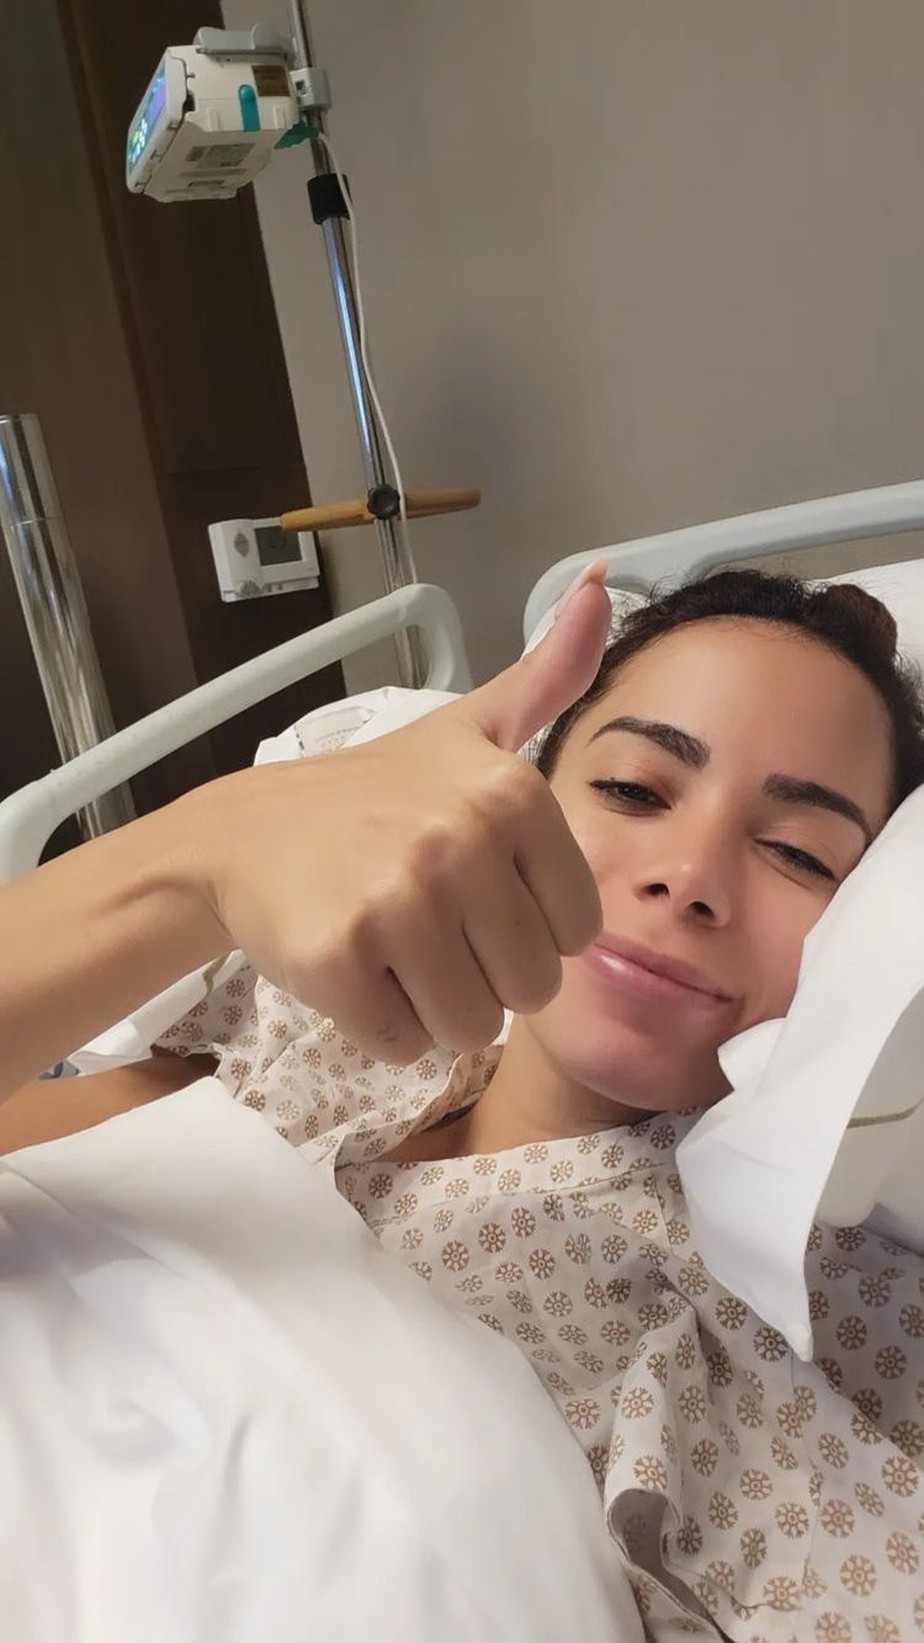 Anitta no hospital: 'Sendo muito bem cuidada'